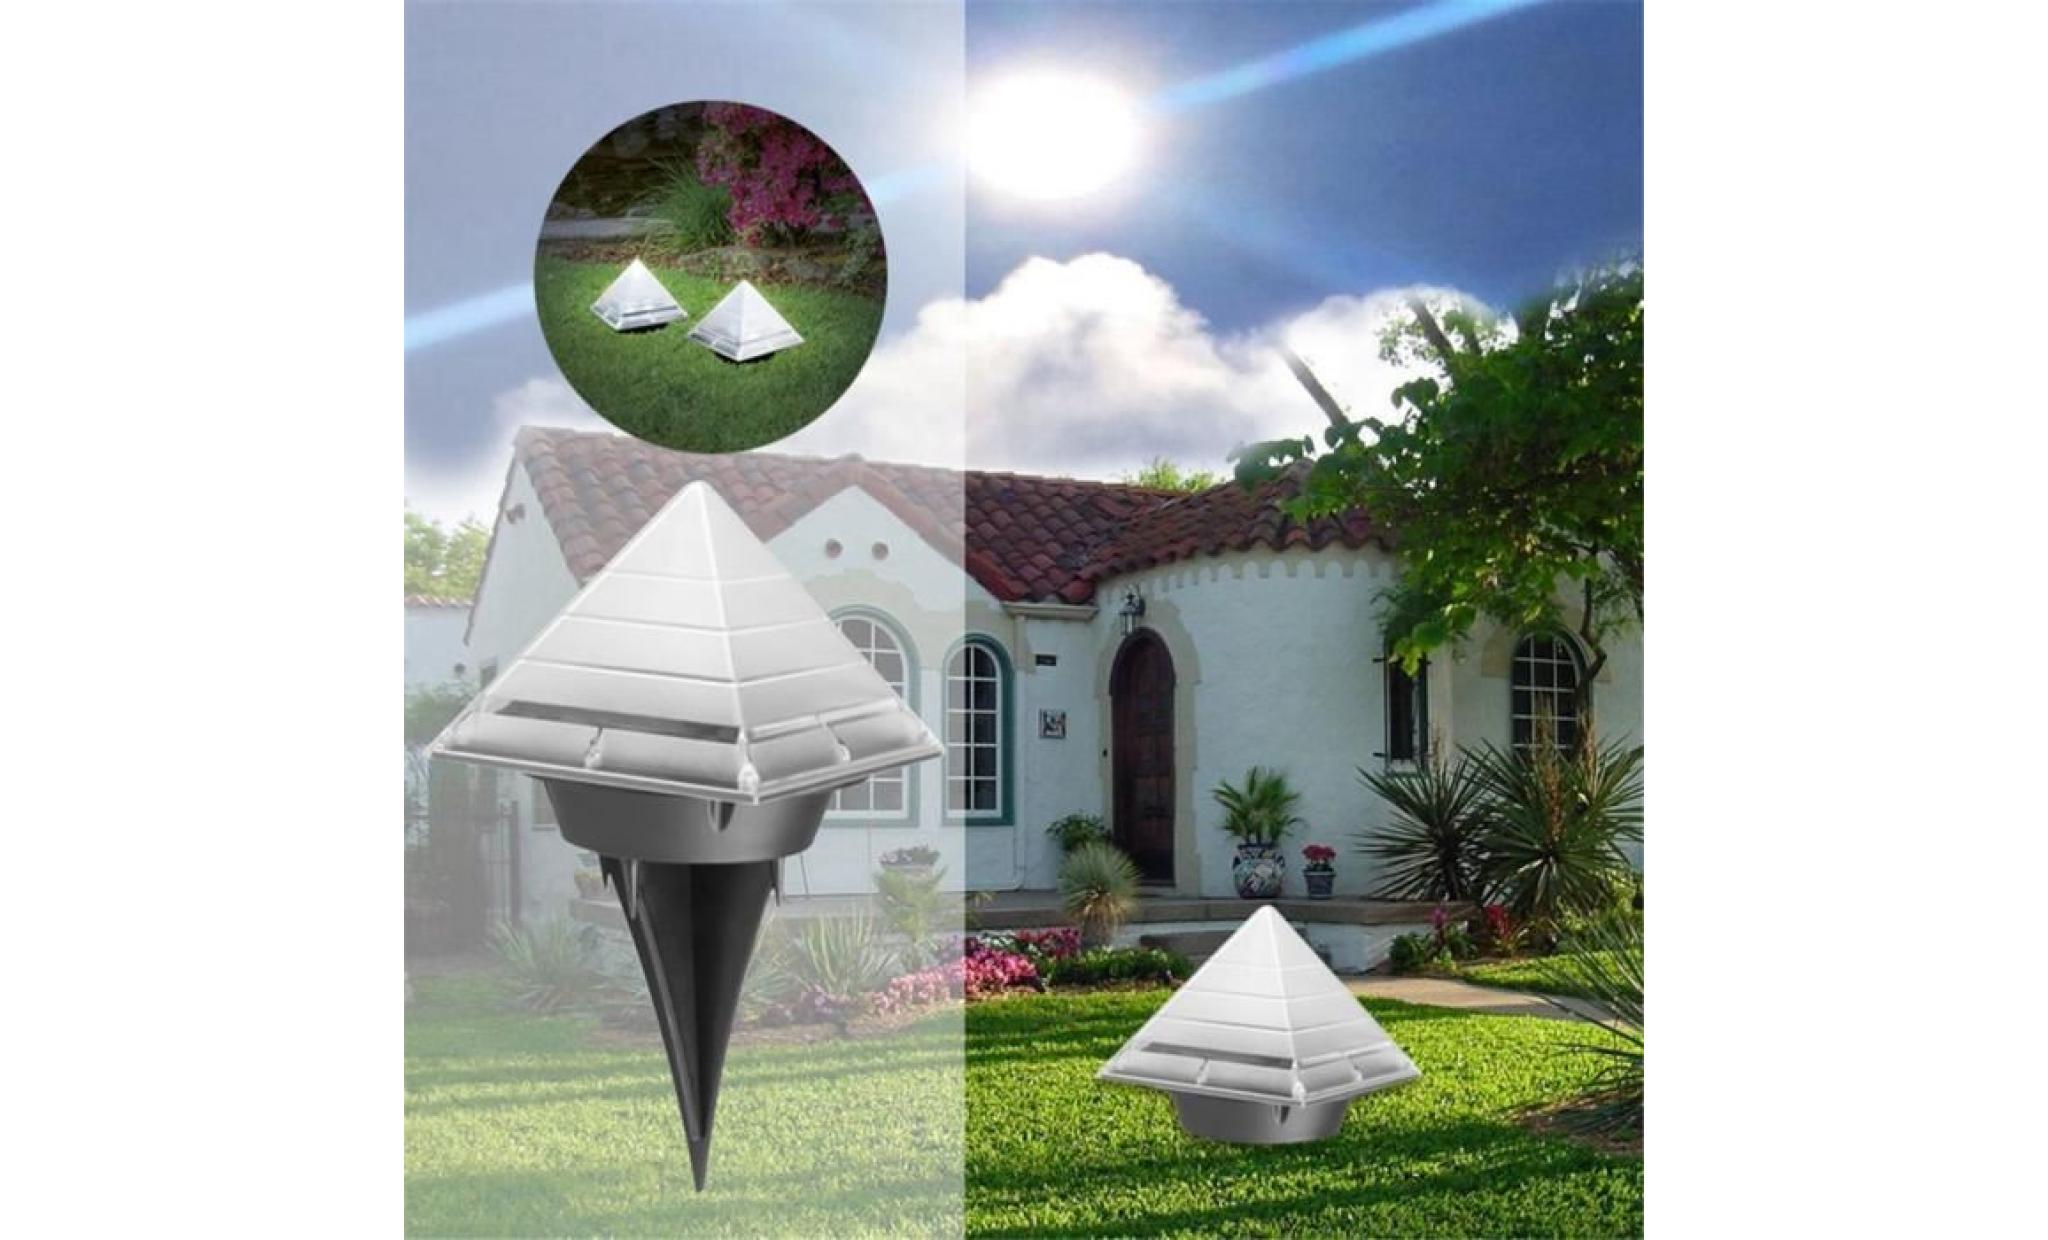 jz pyramide jardin lampe solaire 2 led sous terre terrain pour pelouse path lampe decor jzhg5123